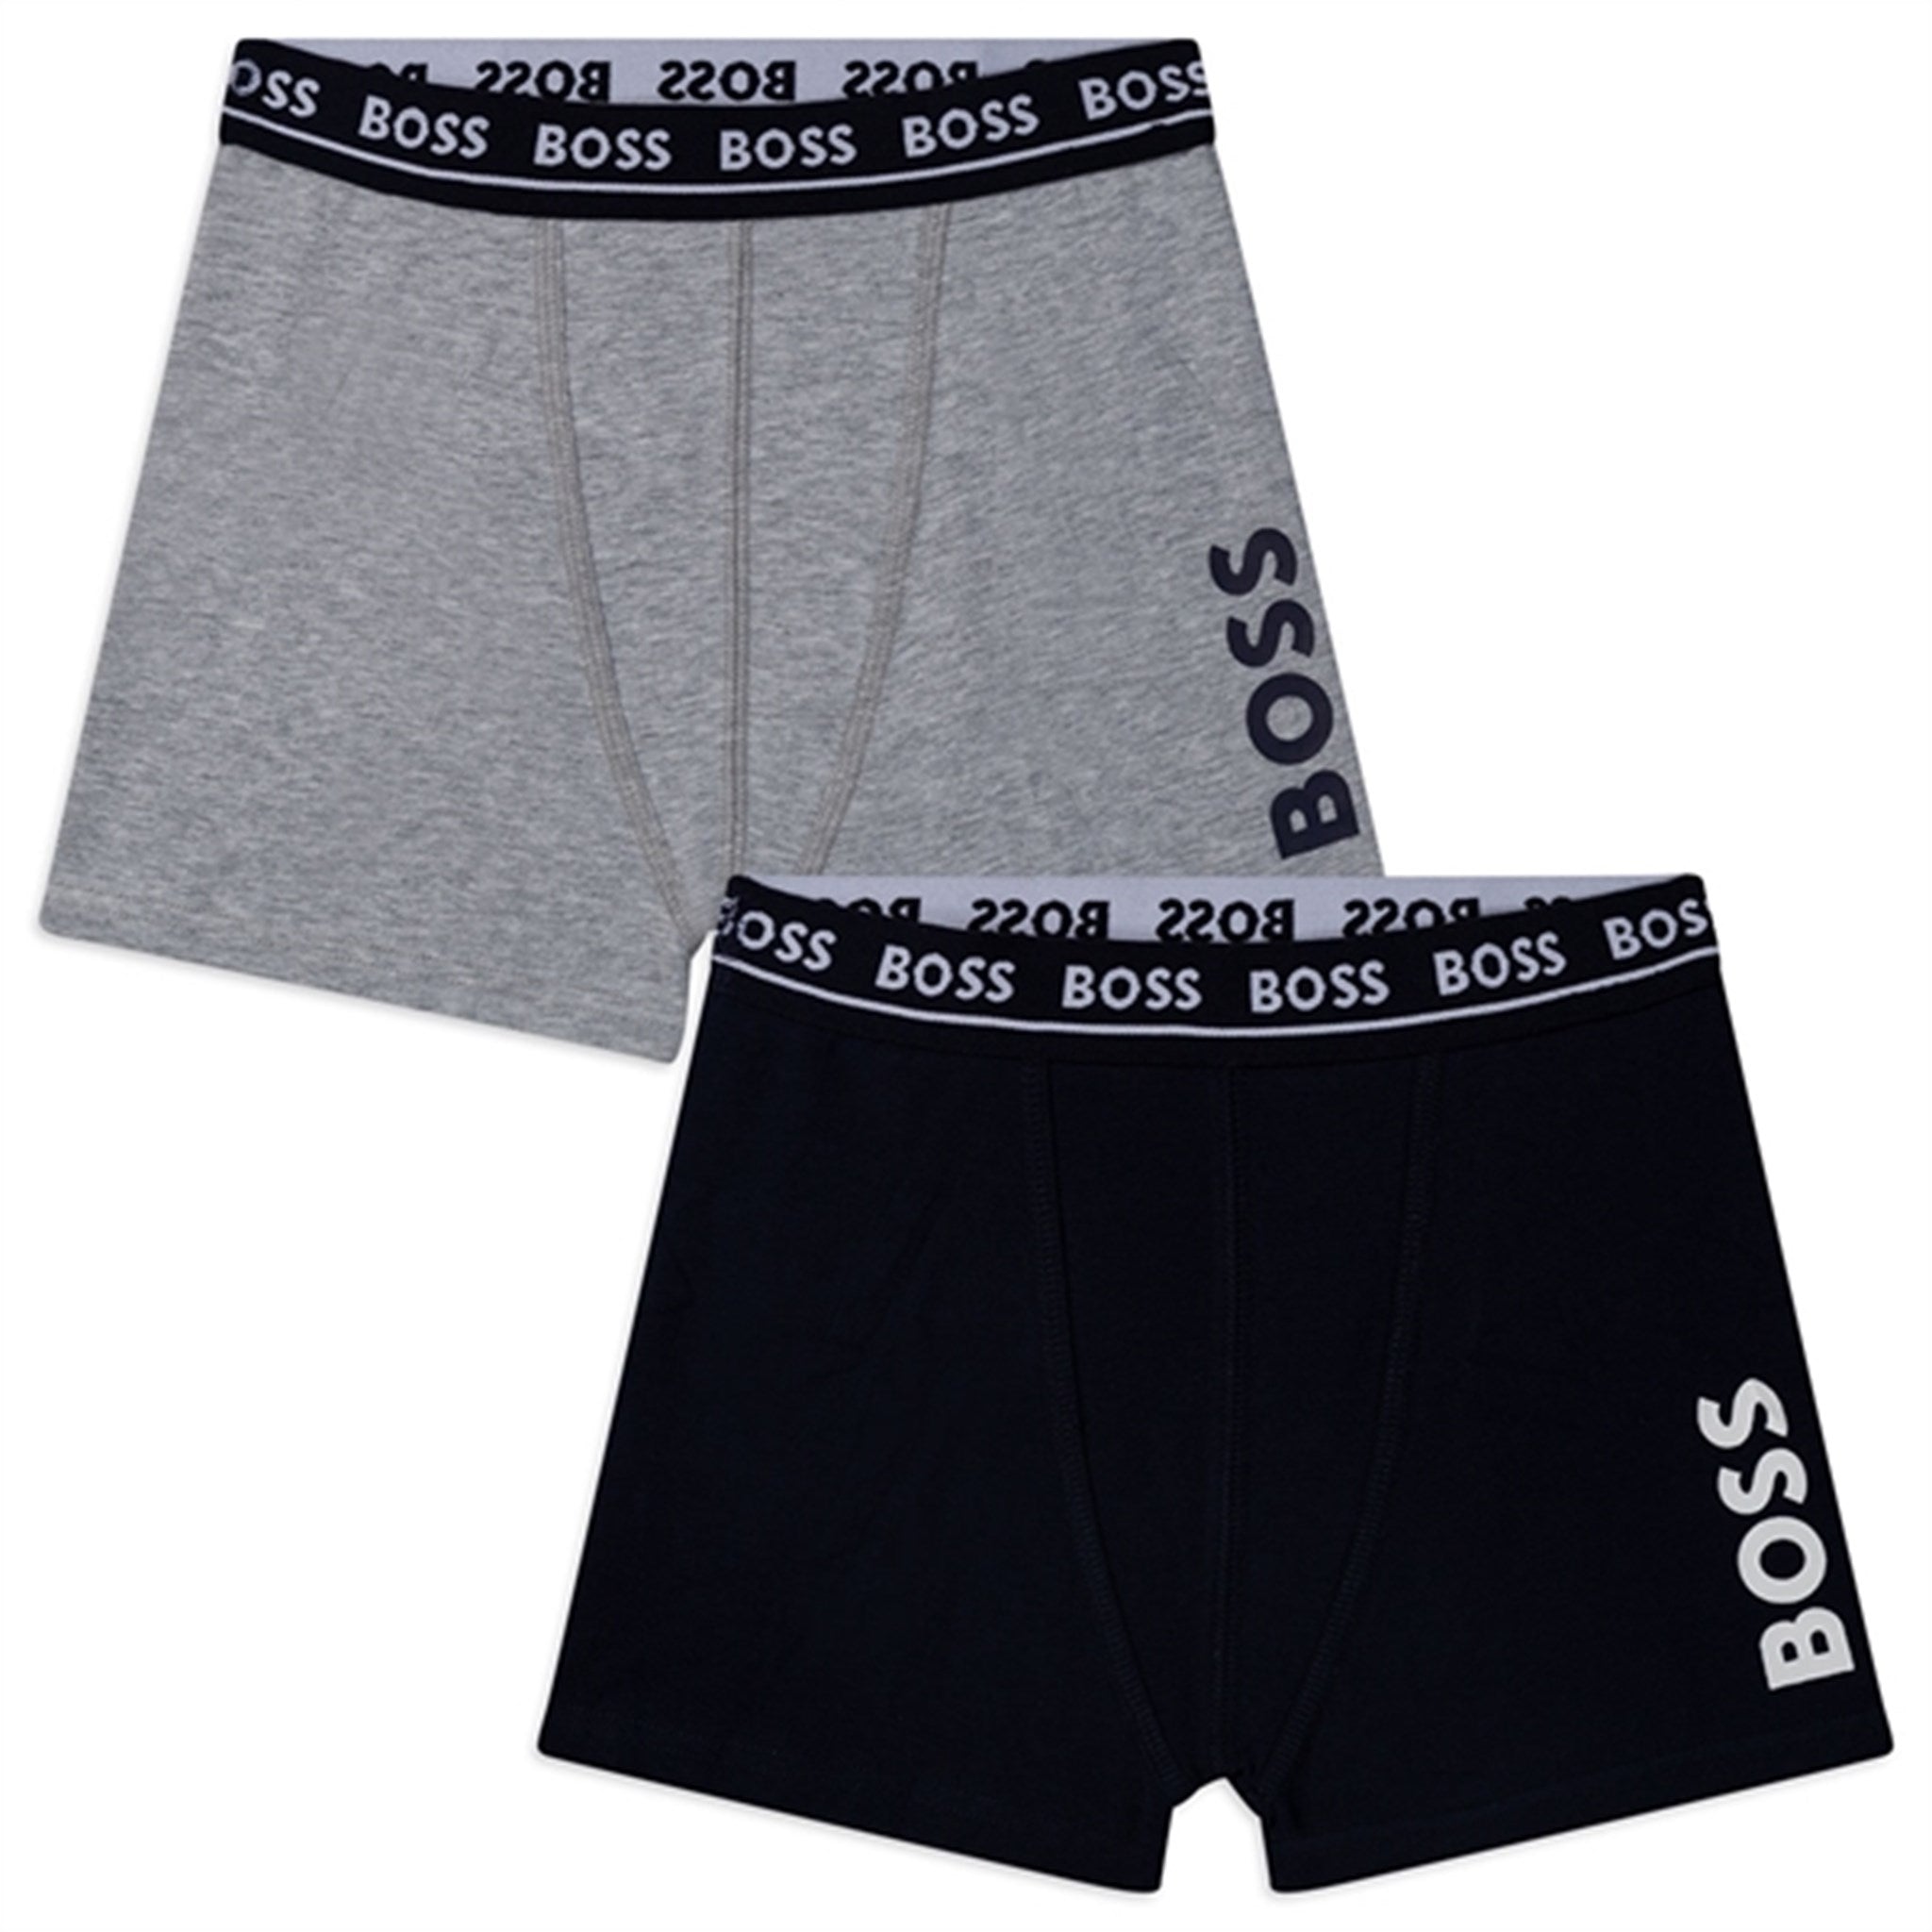 Hugo Boss Boxer Shorts 2-pack Black